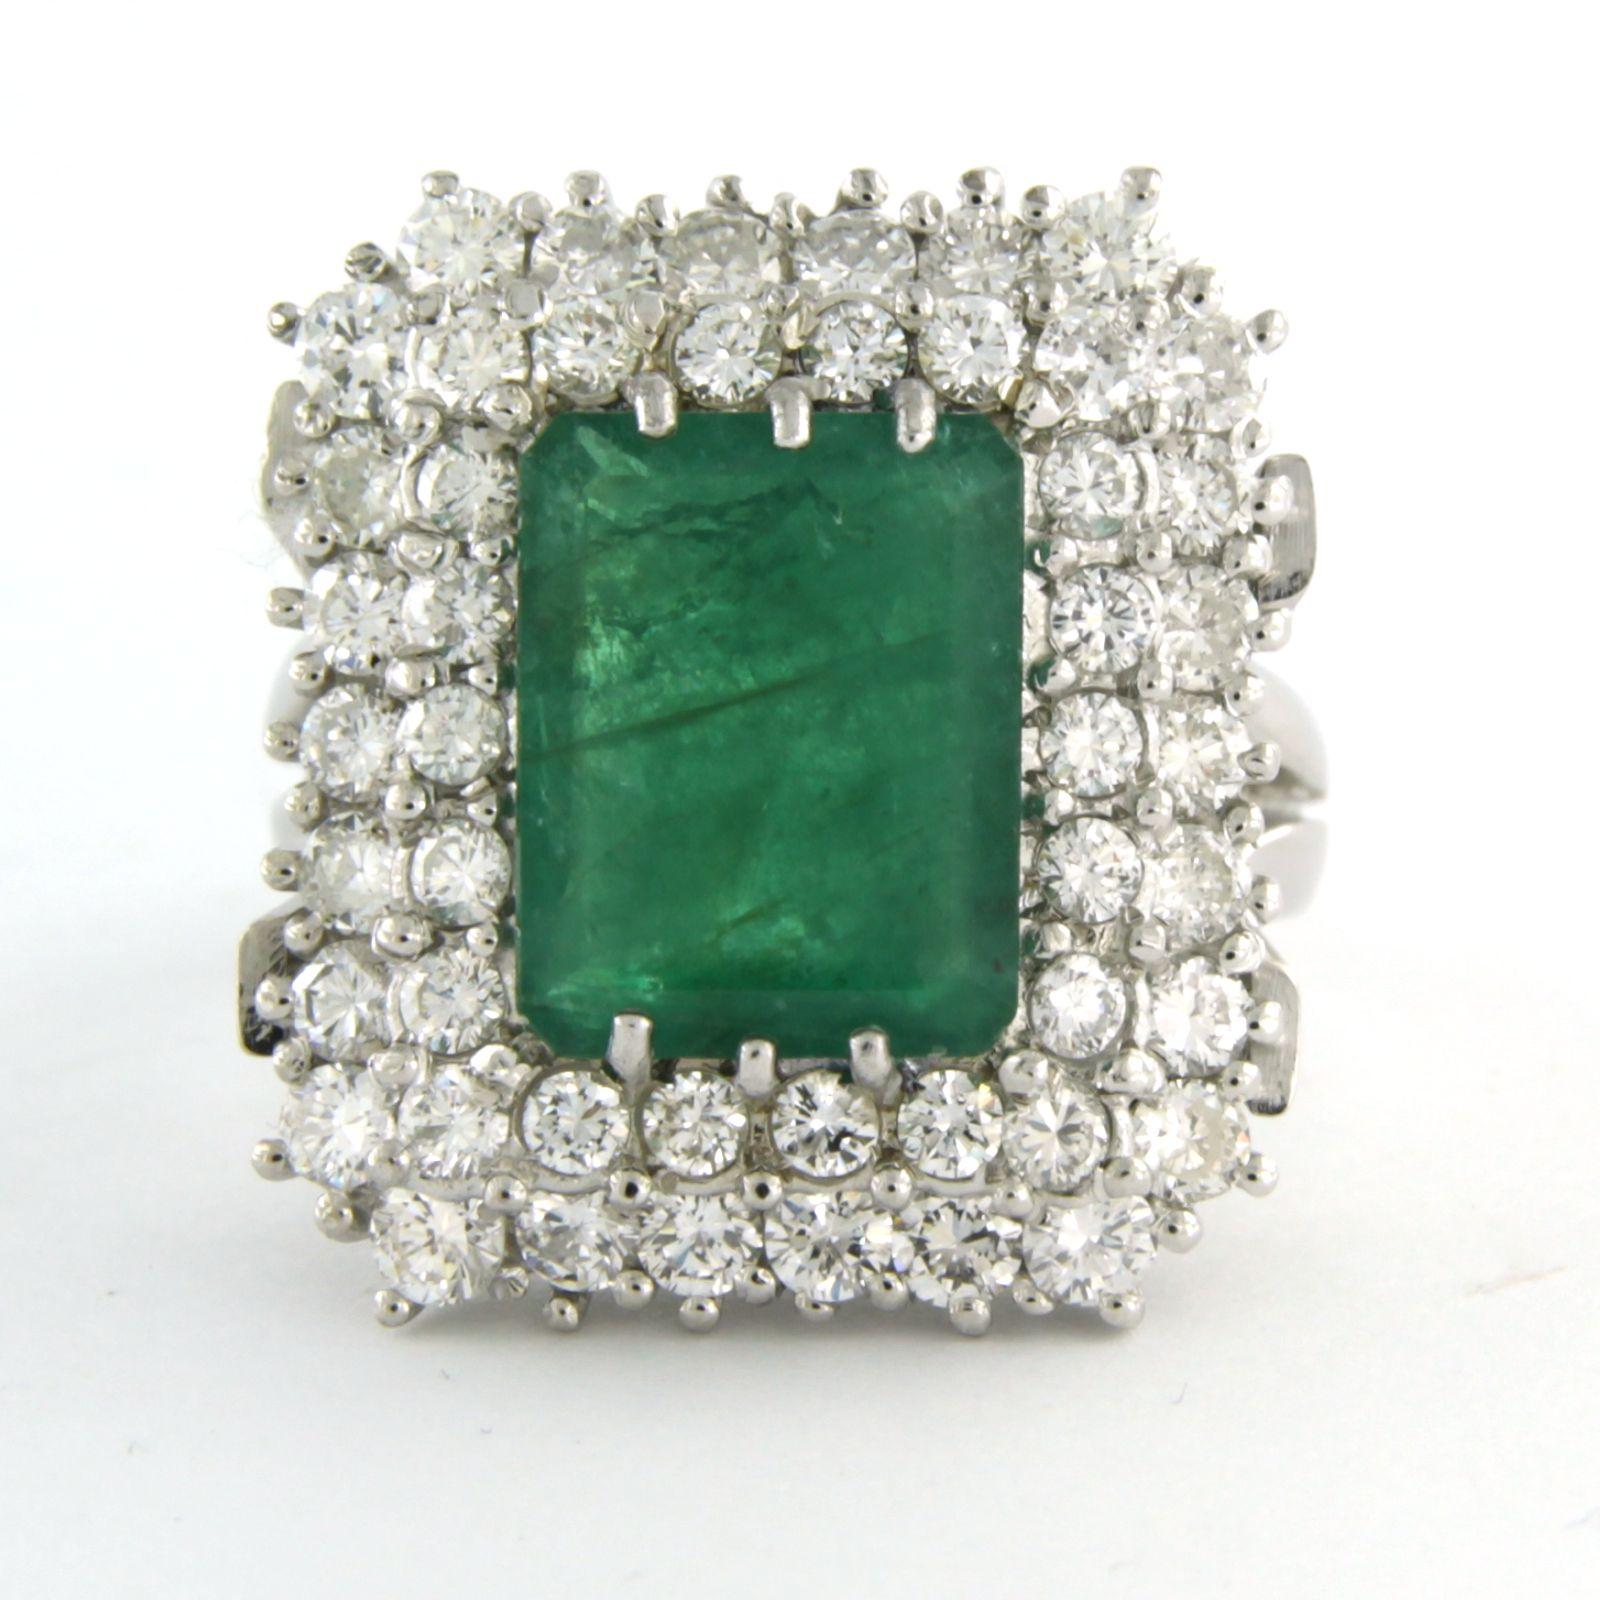 Weißer 18-karätiger Ring mit Smaragd, insgesamt ca. 2,50 Karat, umgeben von Diamanten im Brillantschliff von bis zu 1,74 Karat - F/G - VS/SI - Ringgröße U.S. 6 - EU. 16.5(52)

detaillierte Beschreibung:

Die Oberseite des Rings hat die Form eines